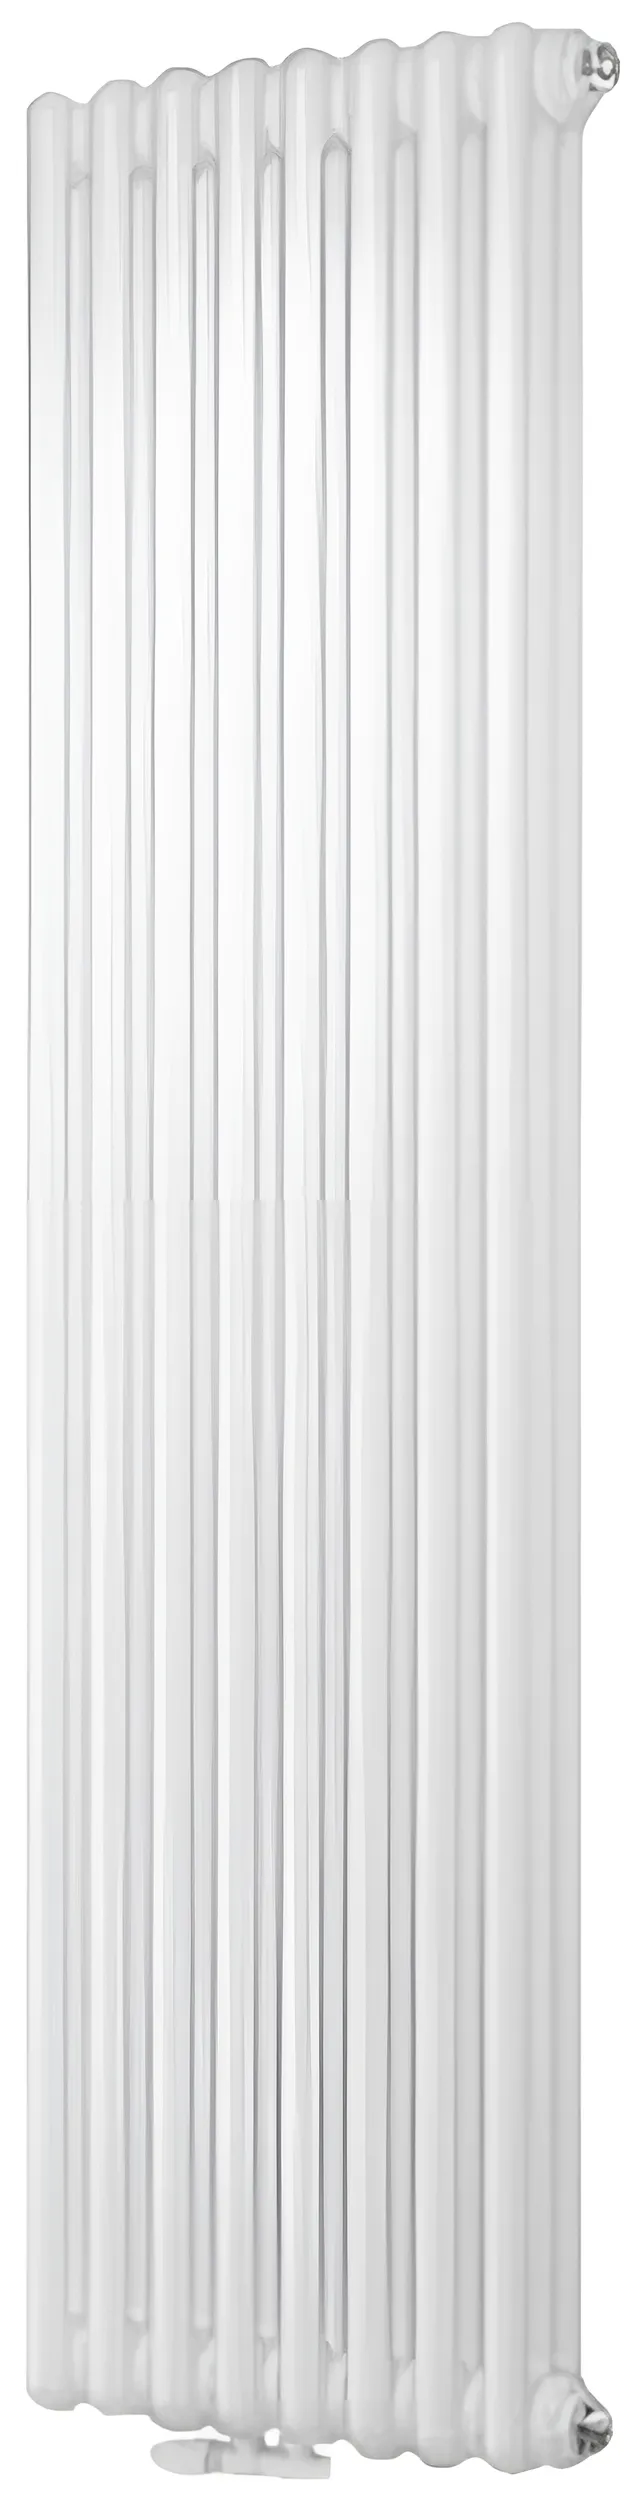 Дизайн-радиатор Cordivari Ardesia 3 колонны 8 секций H1800 мм AS6 COLOR T01